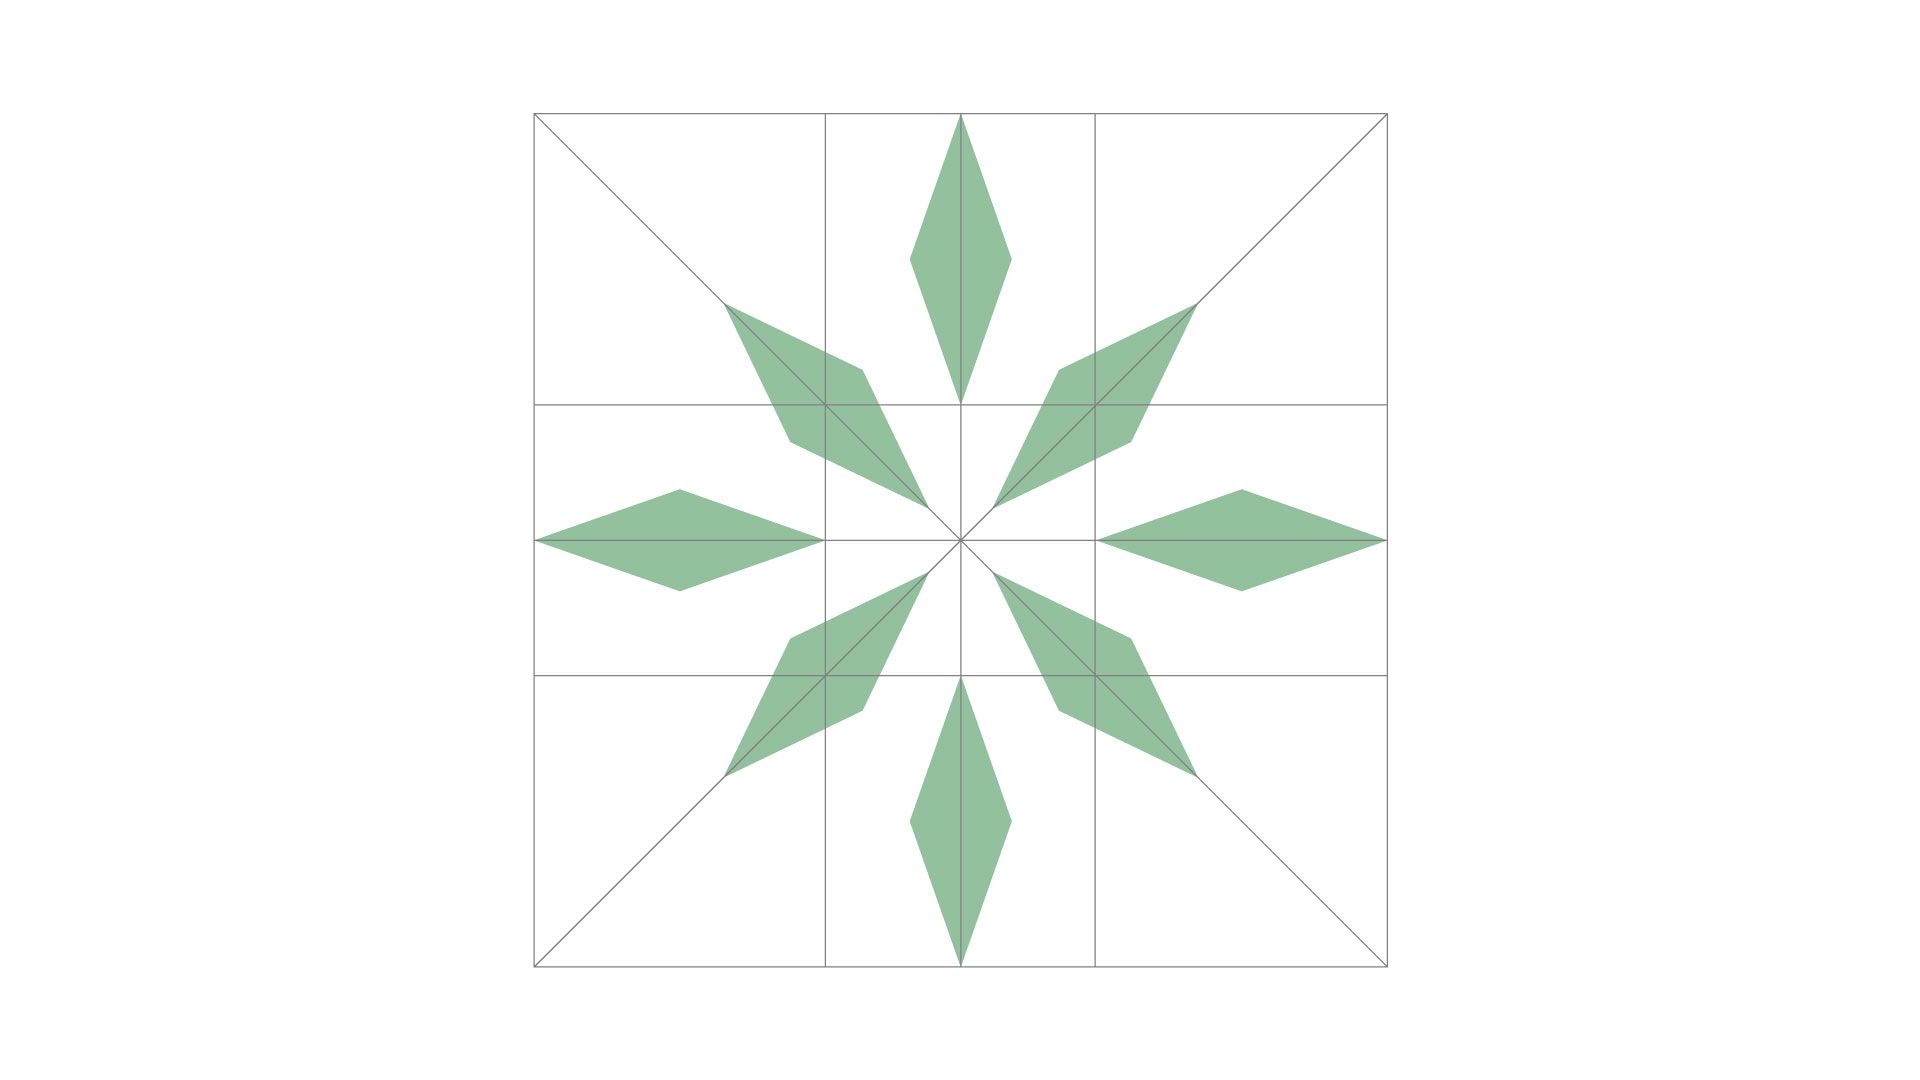 asan-pakningsdesign-visuell-identitet-merkeelement-grid-branding